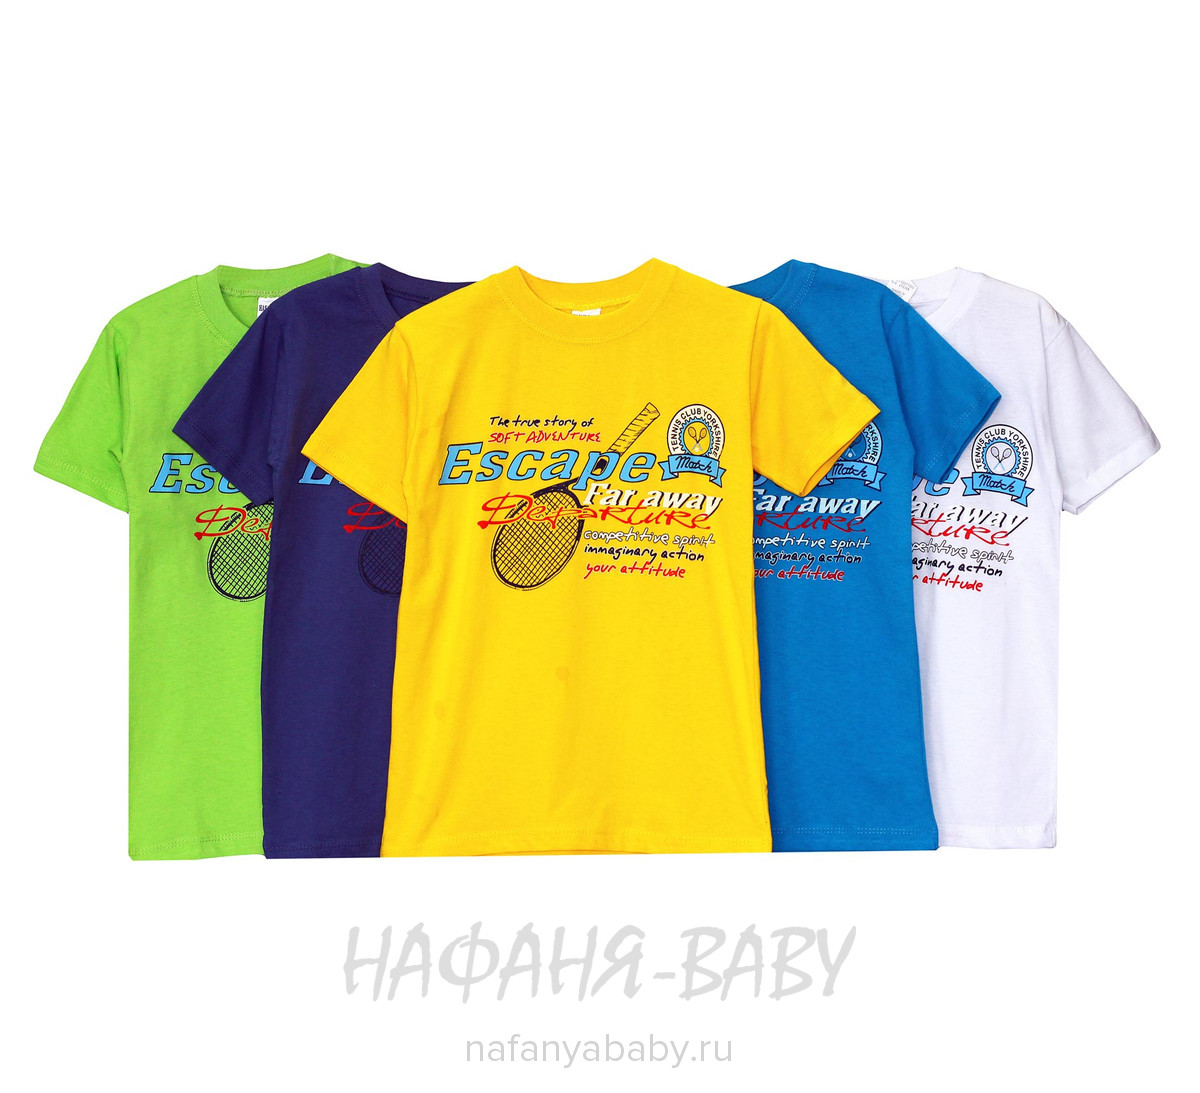 Детская футболка HASAN Bebe арт: 5002, оптом Турция